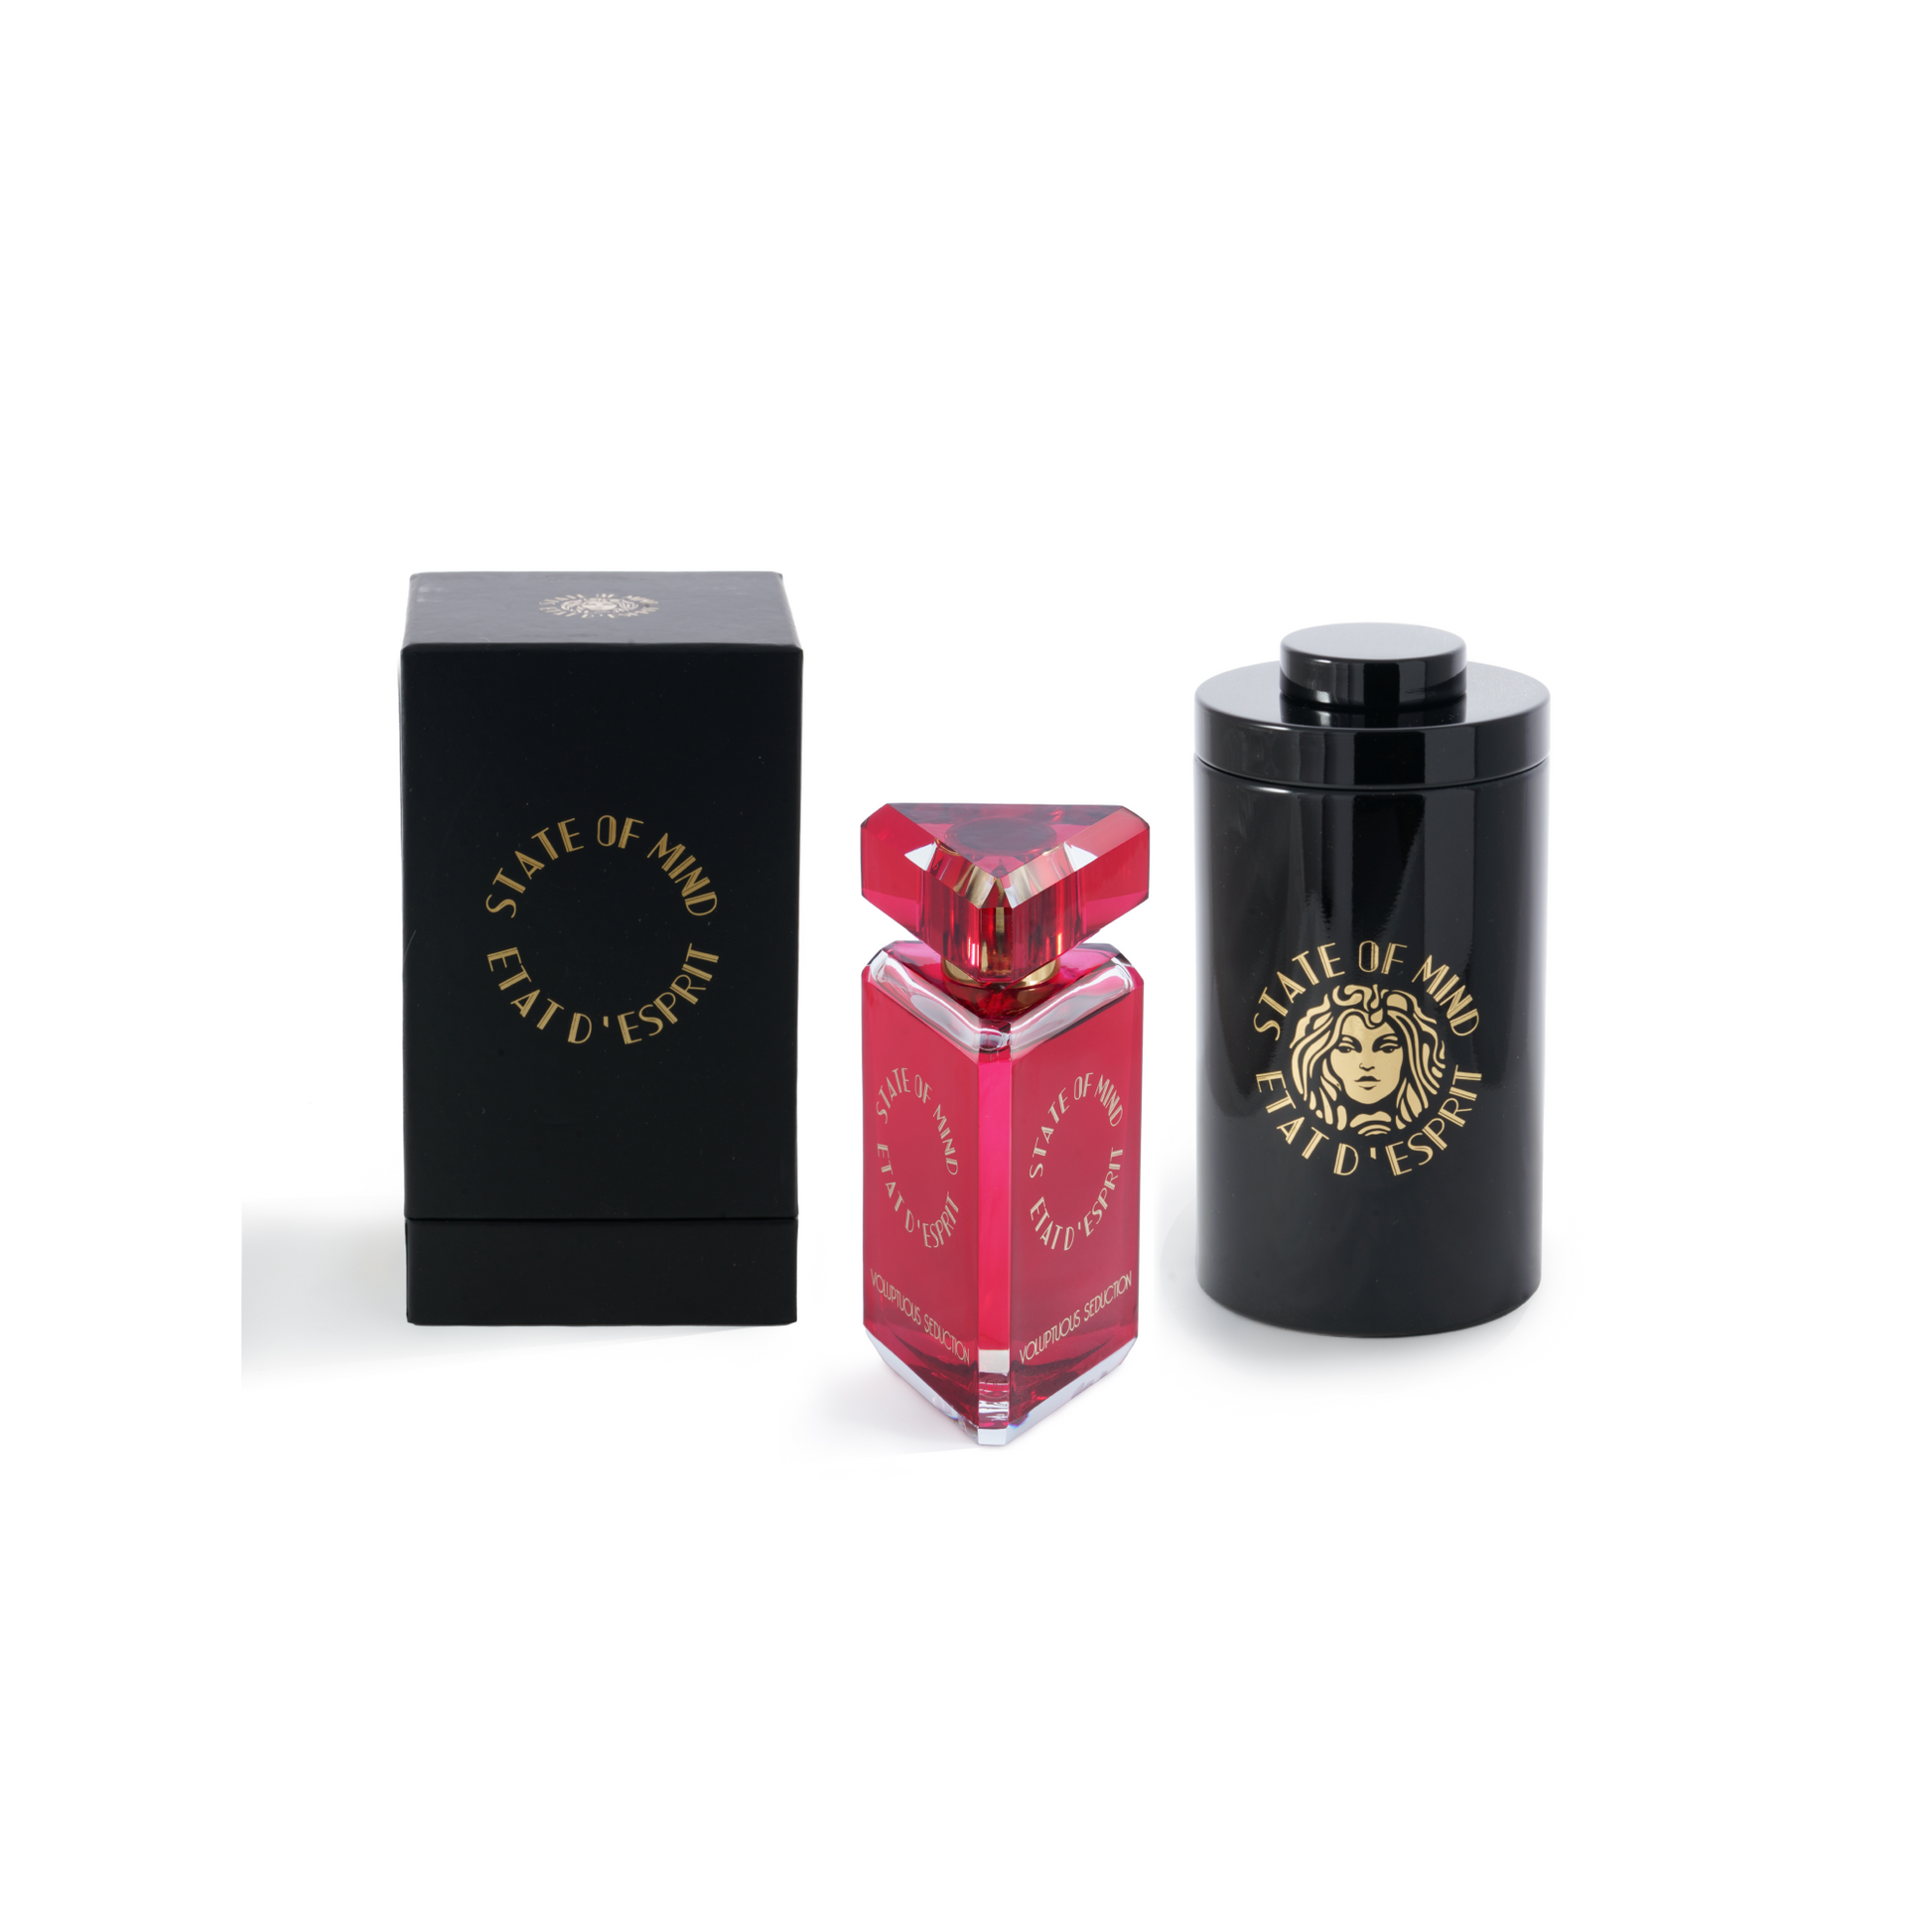 Voluptuous Seduction Eau de Parfum – So Avant Garde